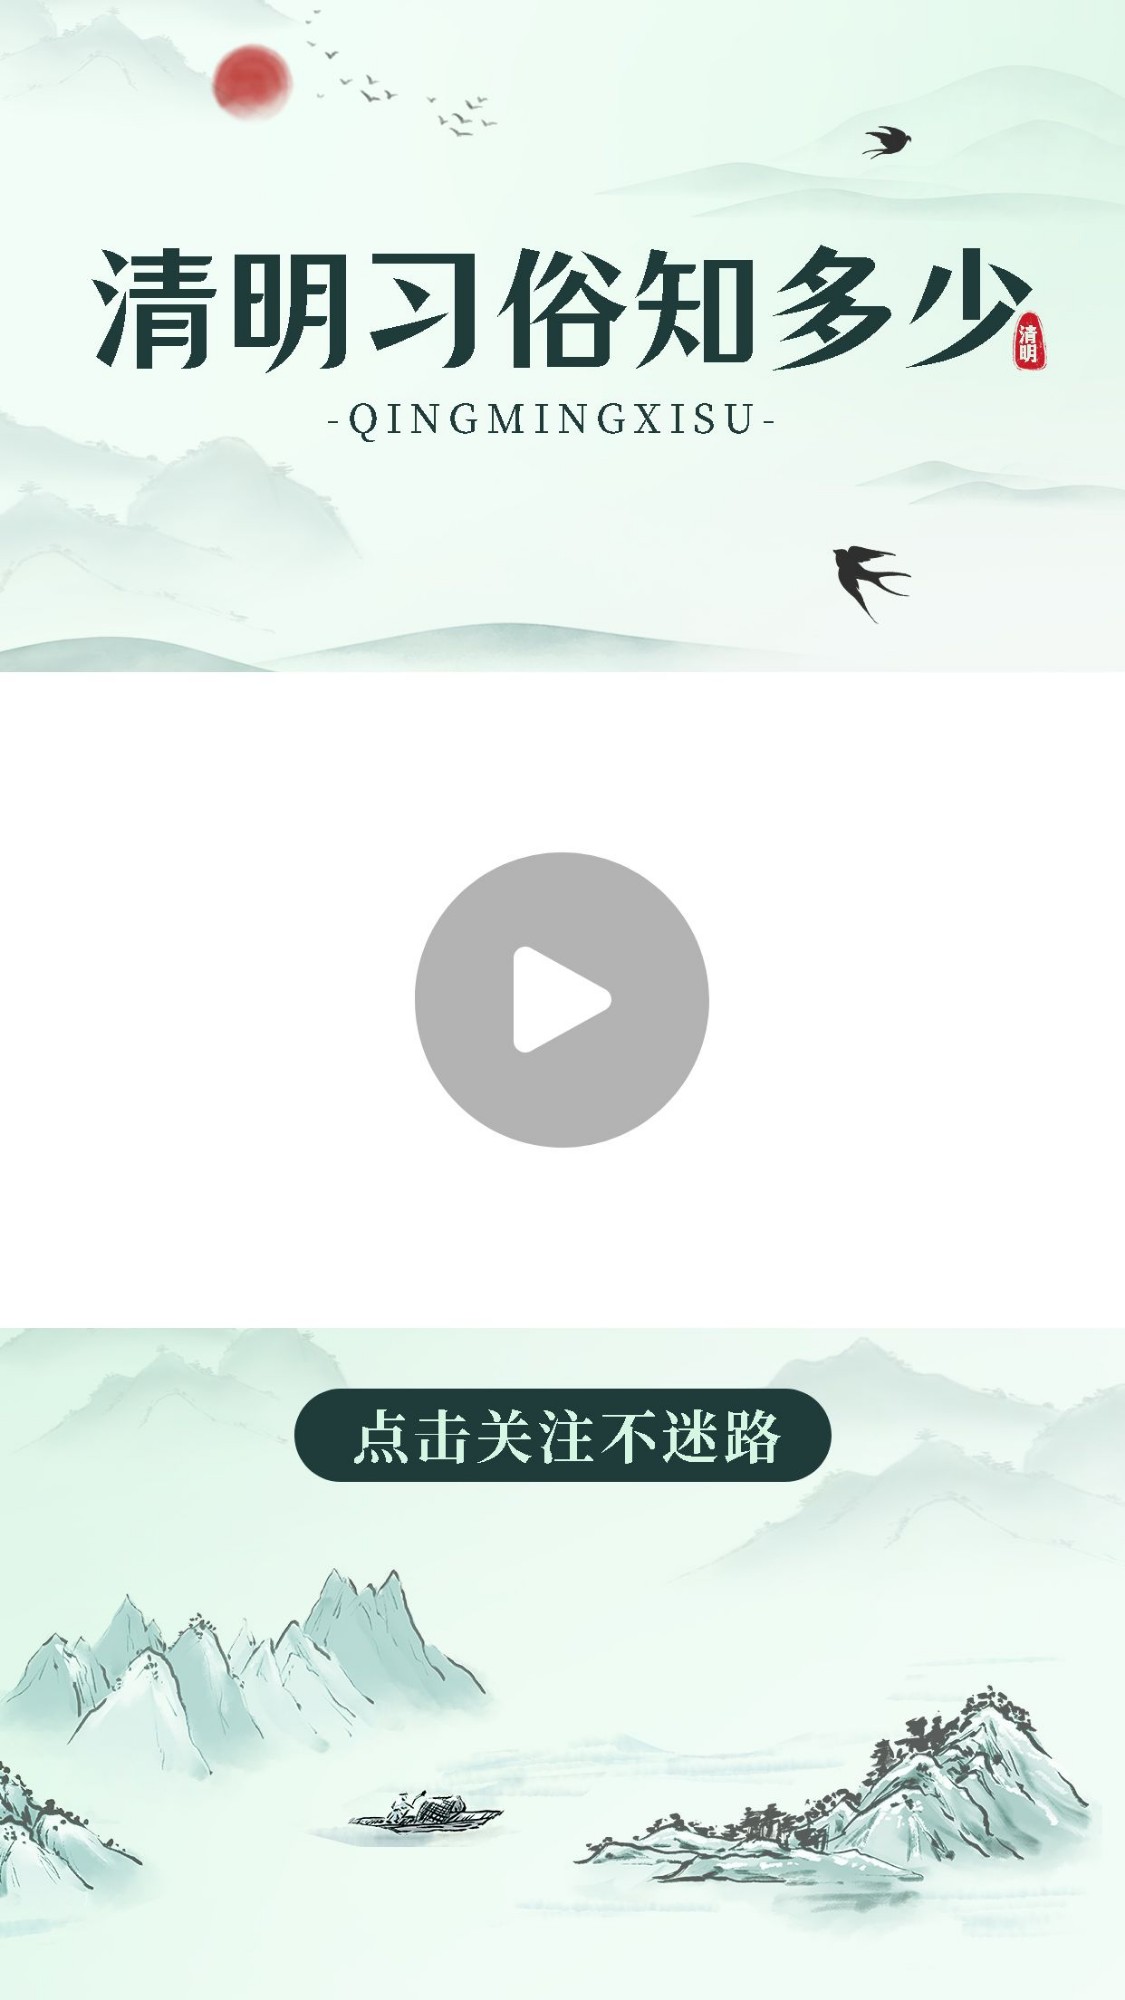 清明节习俗科普宣传视频边框